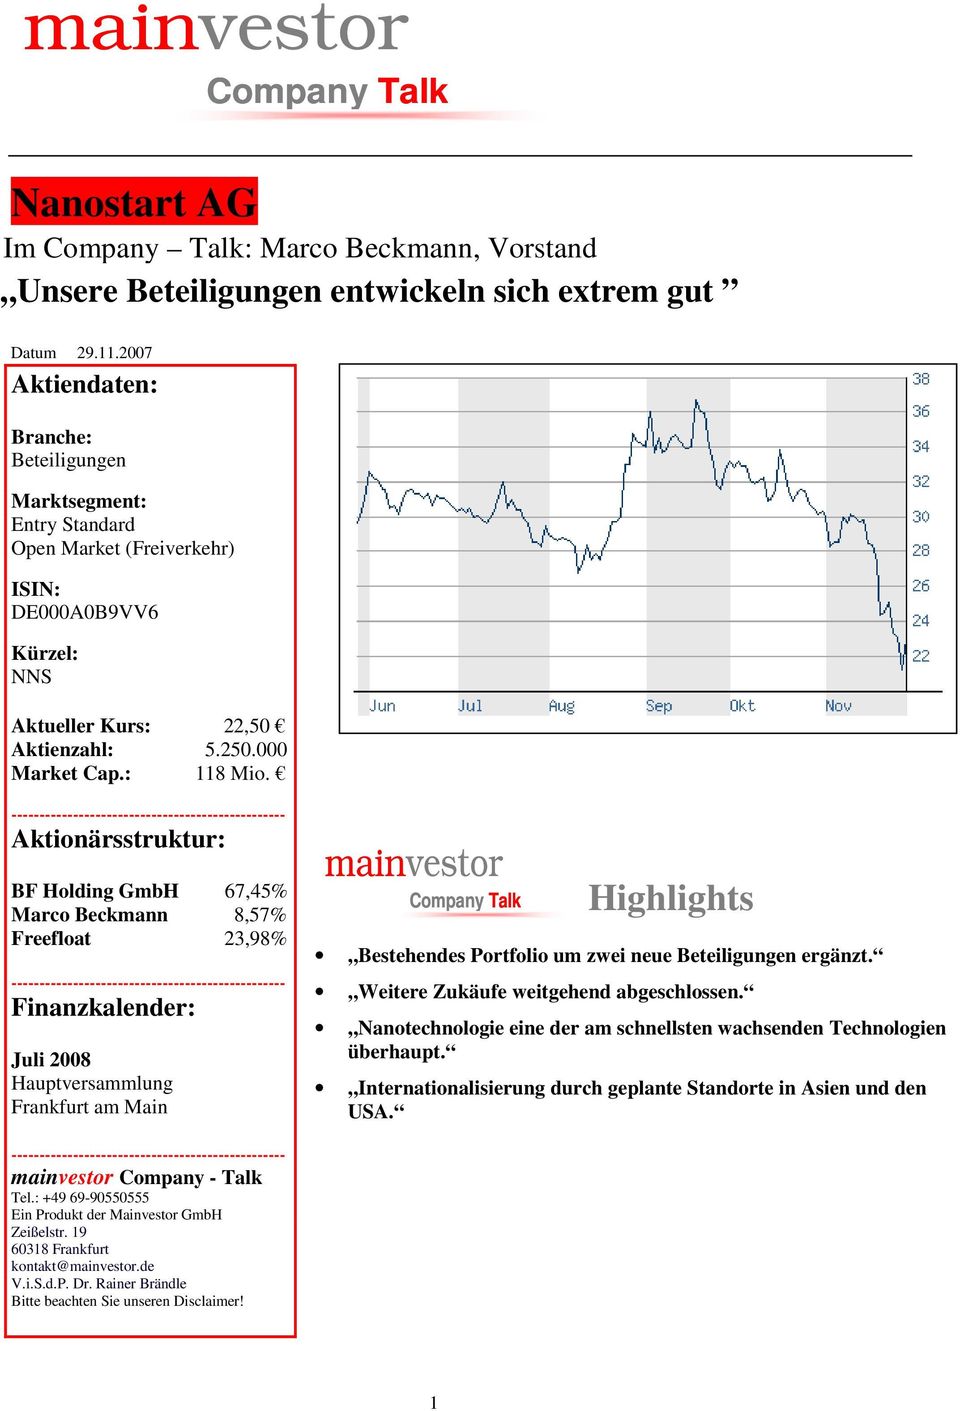 Aktionärsstruktur: BF Holding GmbH 67,45% Marco Beckmann 8,57% Freefloat 23,98% Finanzkalender: Juli 2008 Hauptversammlung Frankfurt am Main mainvestor Highlights Bestehendes Portfolio um zwei neue